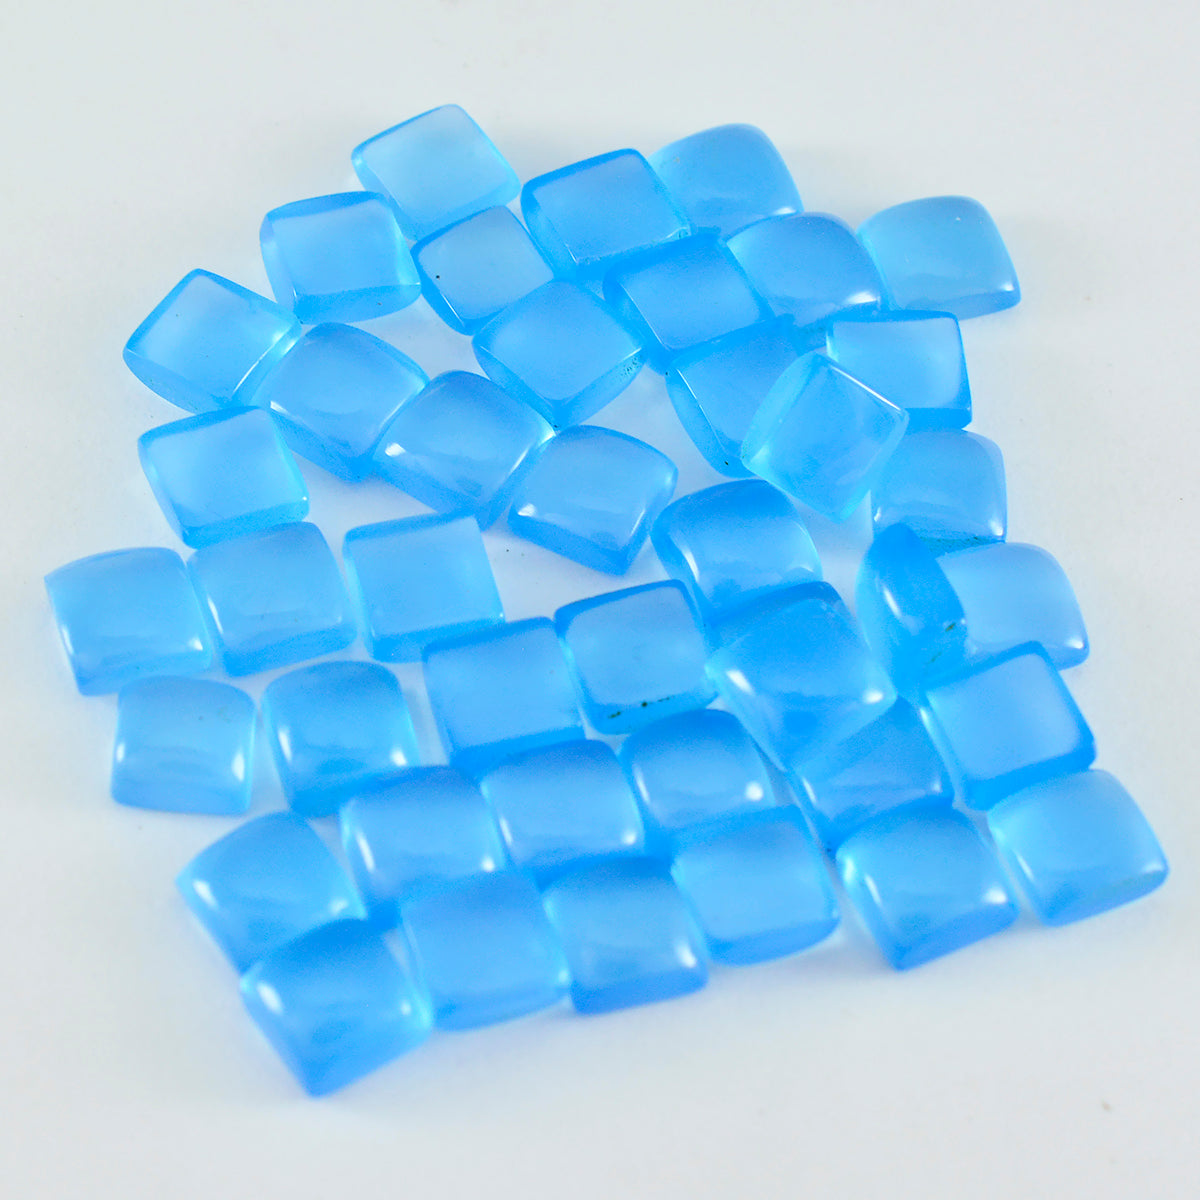 Riyogems 1 pieza cabujón de Calcedonia azul 6x6mm forma cuadrada gema de calidad bonita